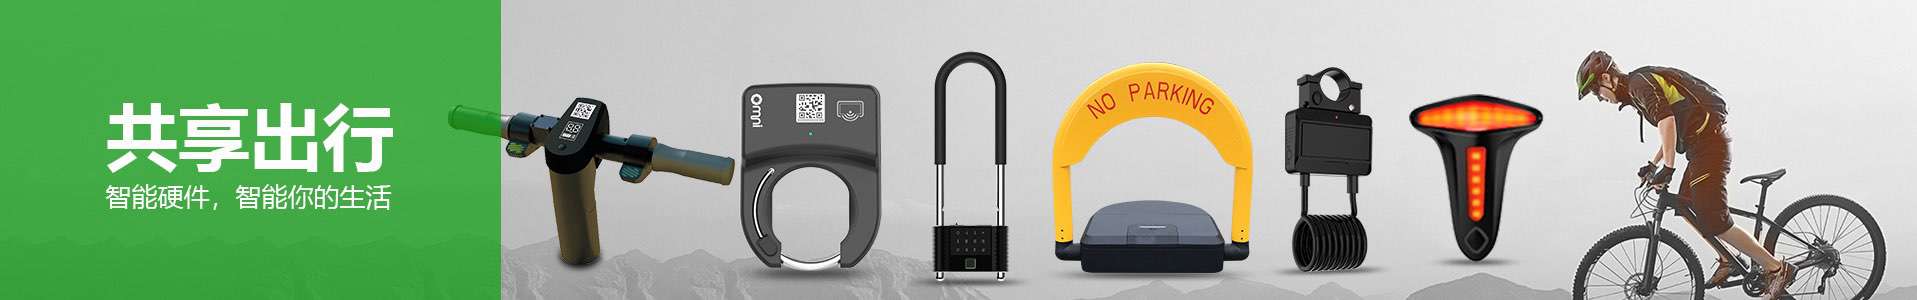 共享单车锁 智能自行车锁 GPS+GPRS+蓝牙智能锁  - 共享单车锁